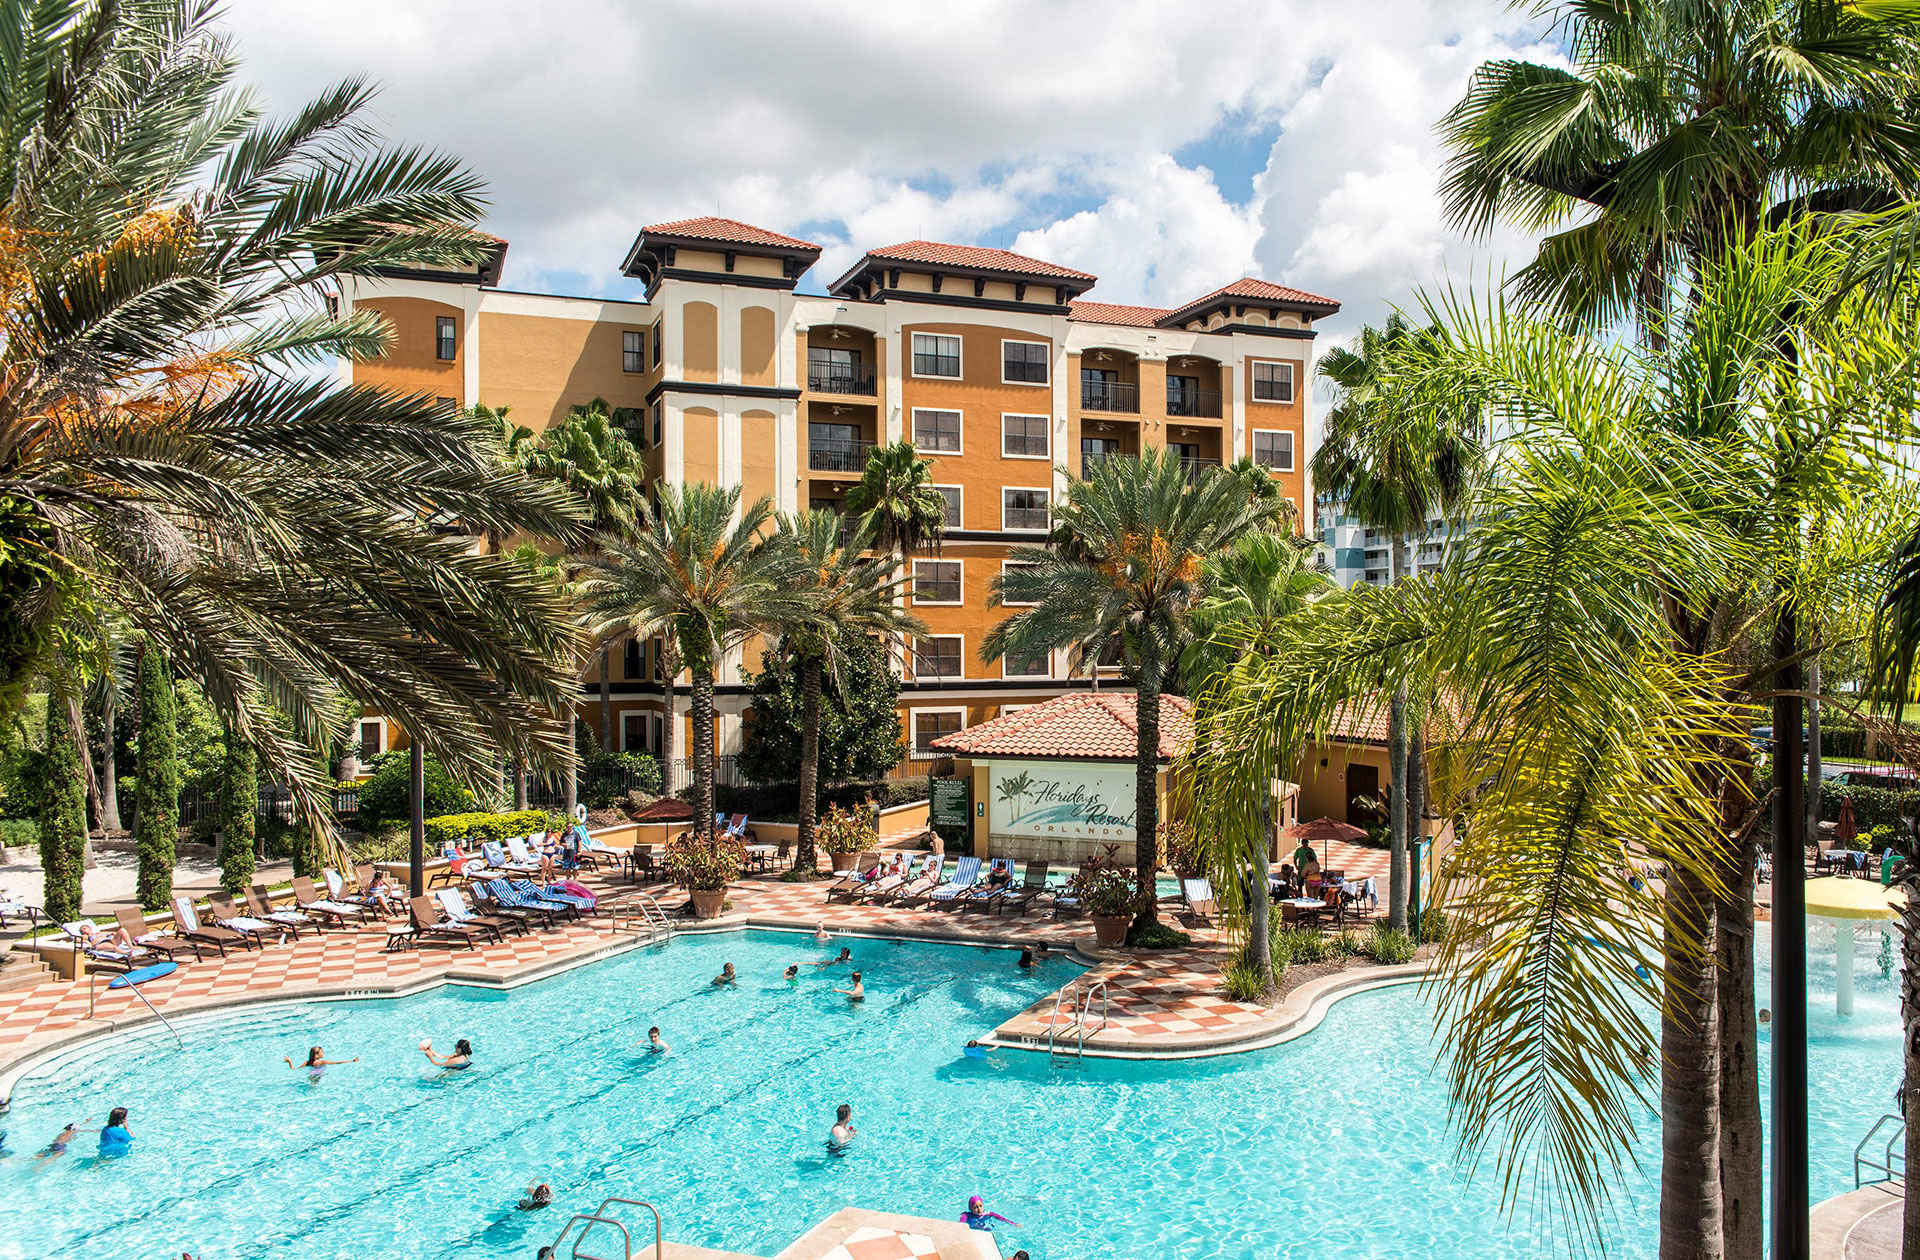 10 Cheap Family Resorts in Orlando 2019  Family Vacation 